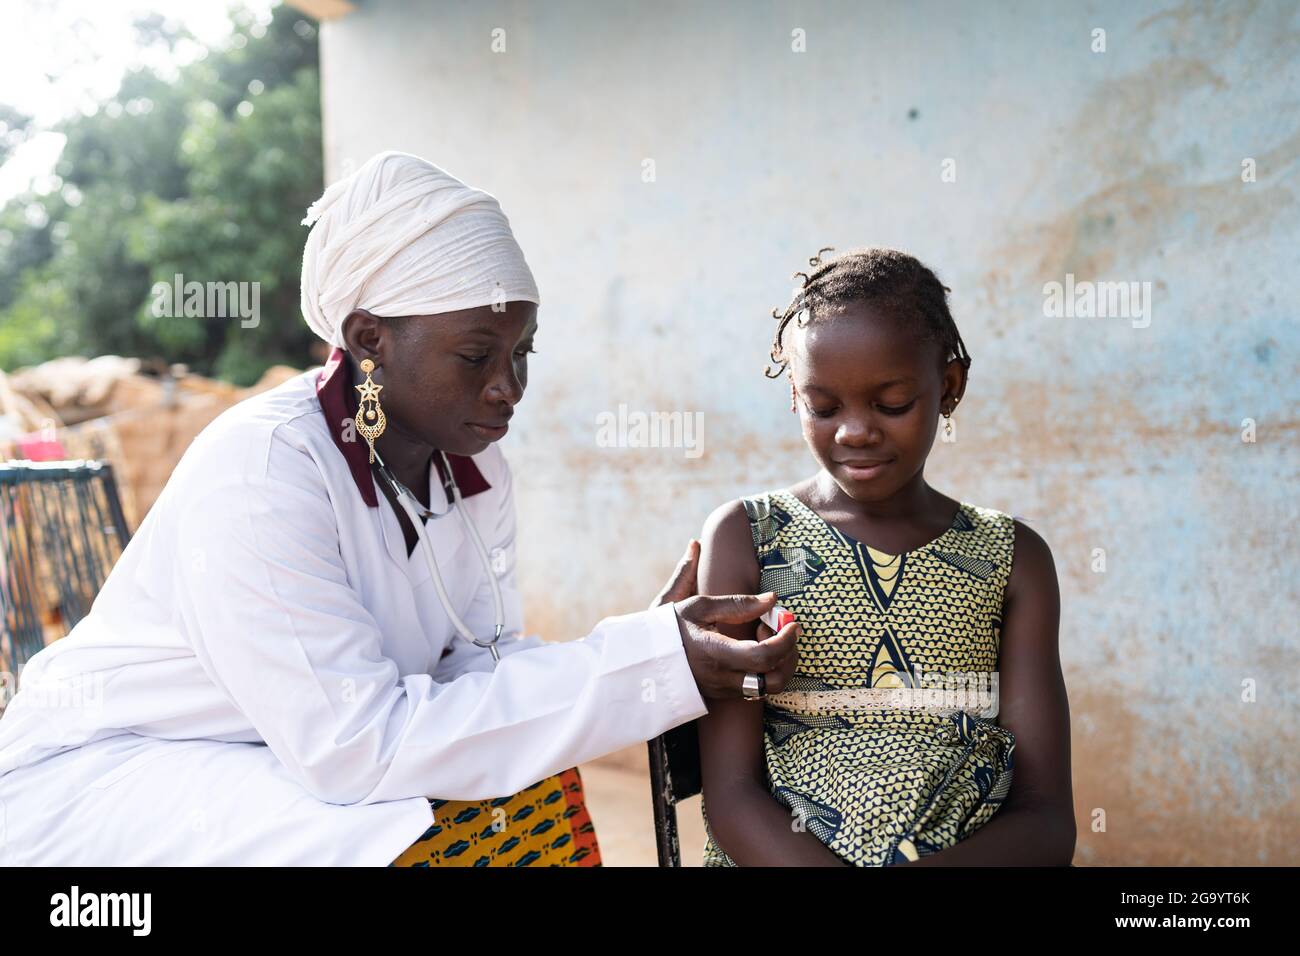 Auf diesem Bild platziert eine aufmerksame und sanfte junge afrikanische Krankenschwester, die in einem weißen Mantel gekleidet ist, ein Digitalthermometer unter die Achsel eines kleinen Schwarzen Stockfoto